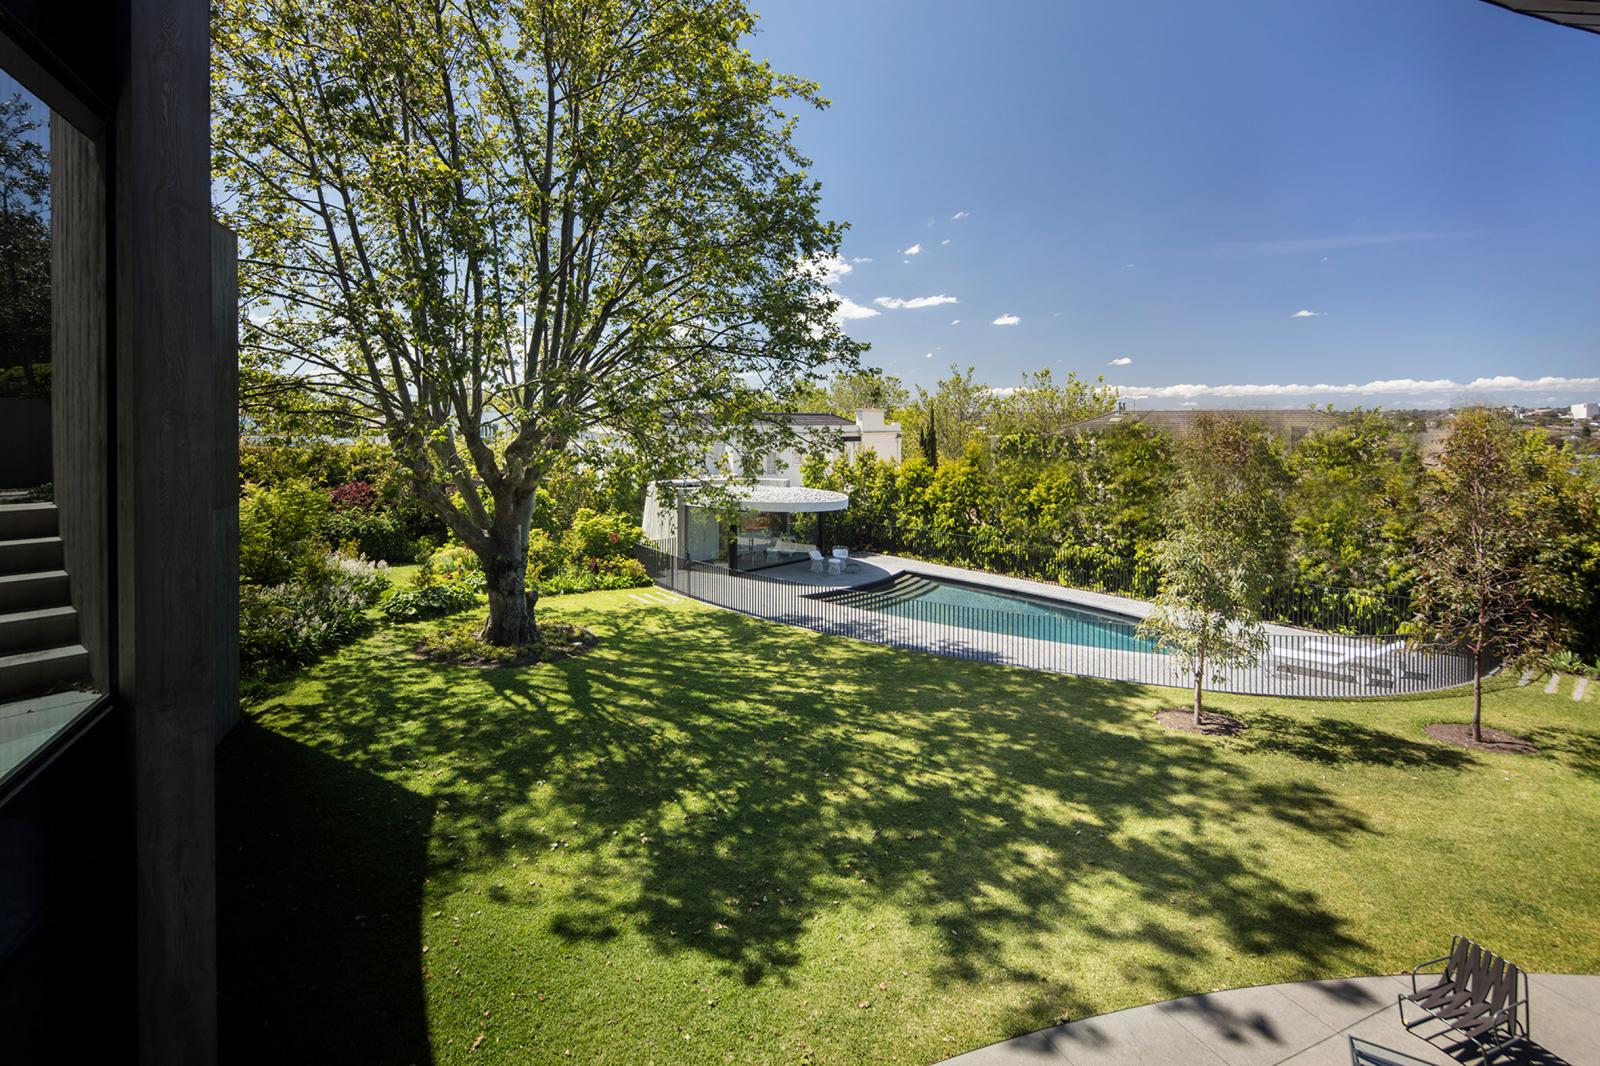 hình ảnh bể bơi bầu dục ở sân sau ngôi nhà có mái hình đĩa, thảm cỏ xanh mướt, cây cổ thụ tỏa bóng mát